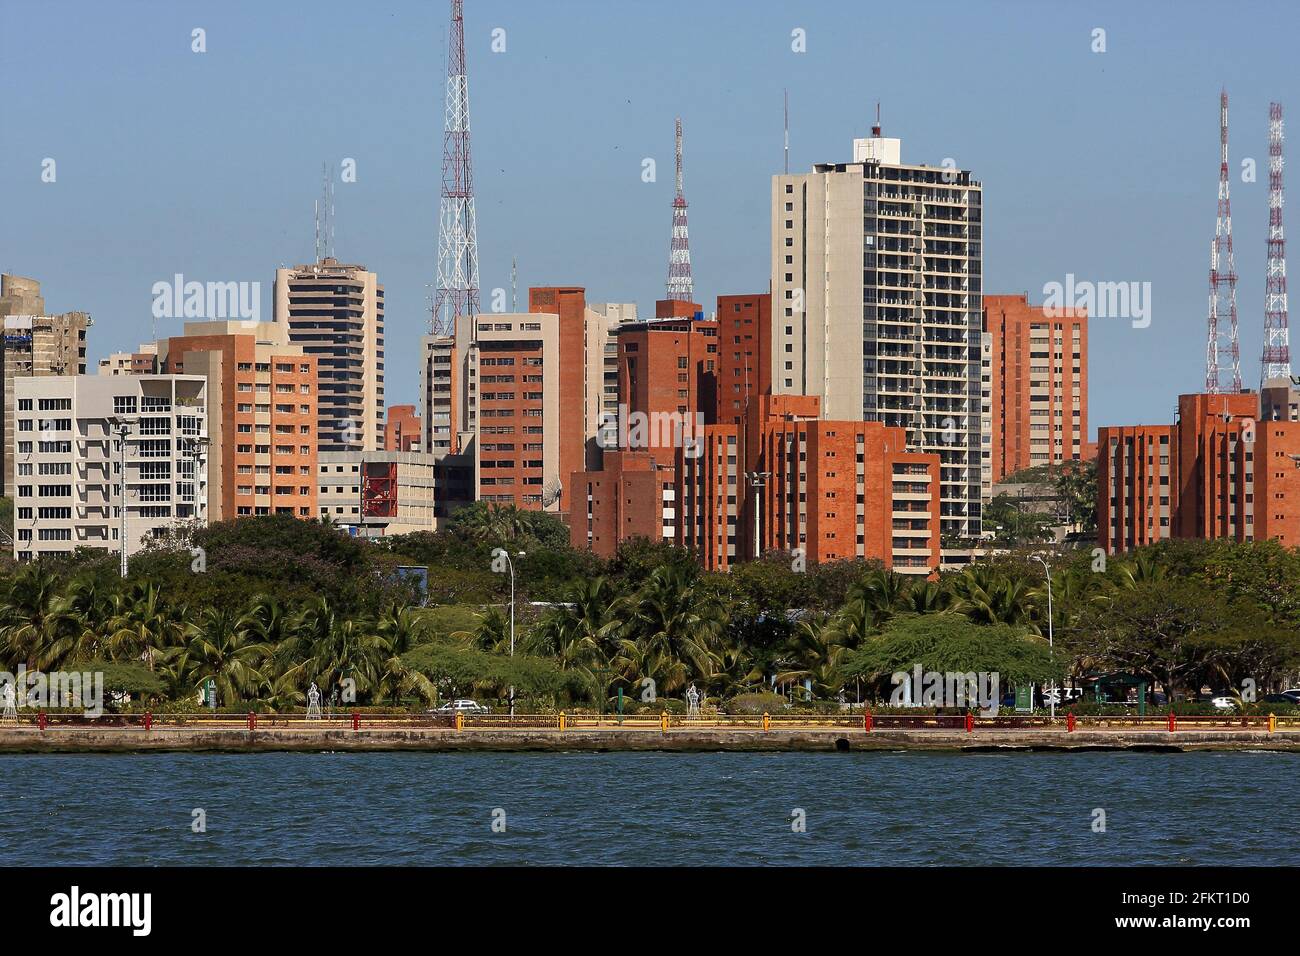 Venezuela - Zulia - Maracaibo -28/01/2009. View of the city of Maracaibo from the lake. Photo: José Bula U. Stock Photo